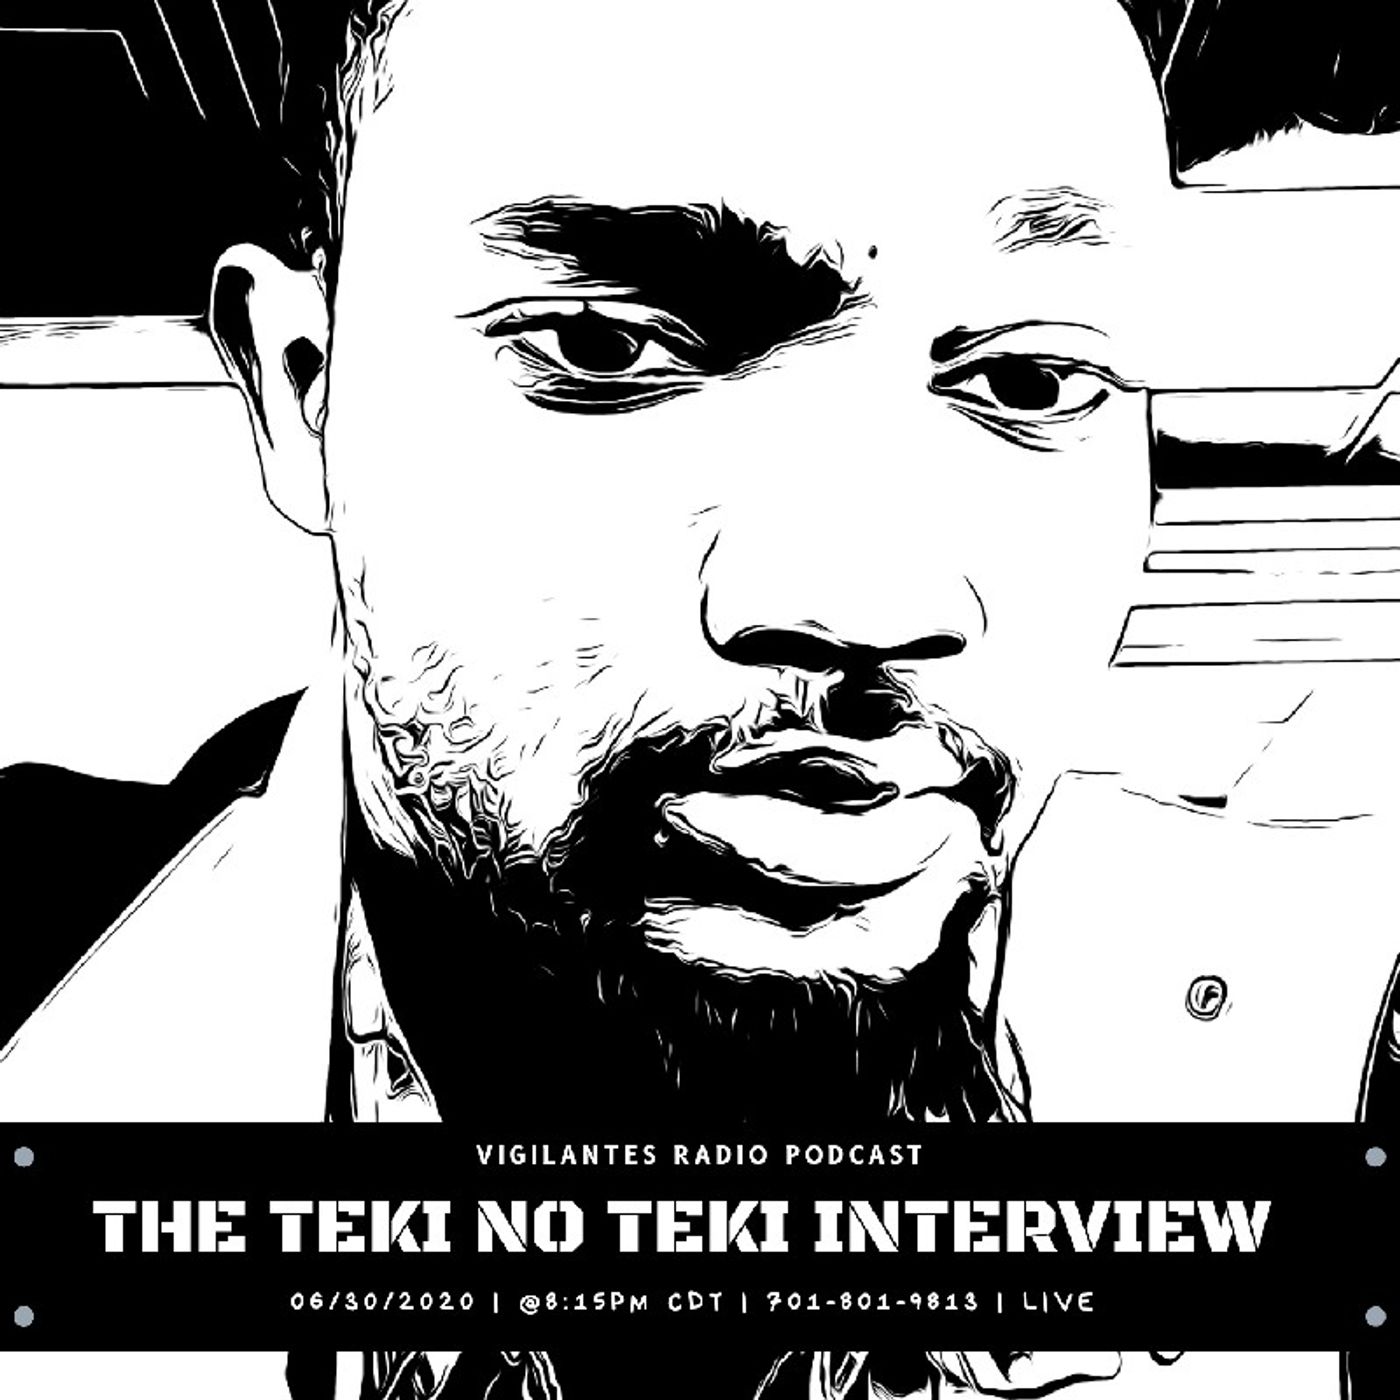 The Teki no Teki Interview. Image